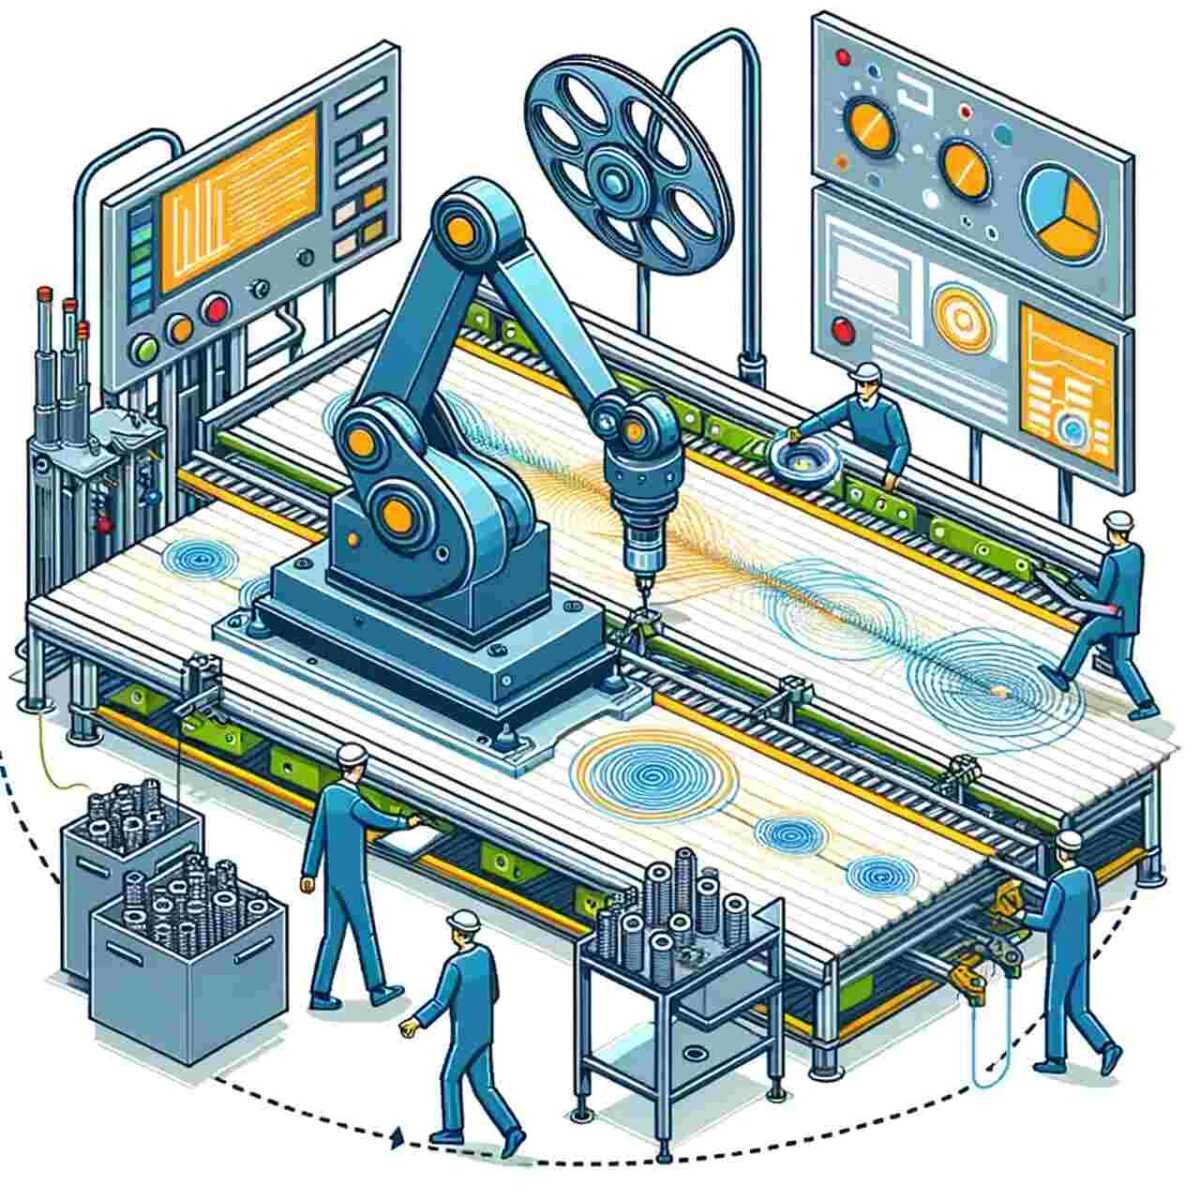 Wektorowe przedstawienie efektywnej linii produkcyjnej z robotami spawalniczymi w przemyśle, z pracownikami nadzorującymi proces."